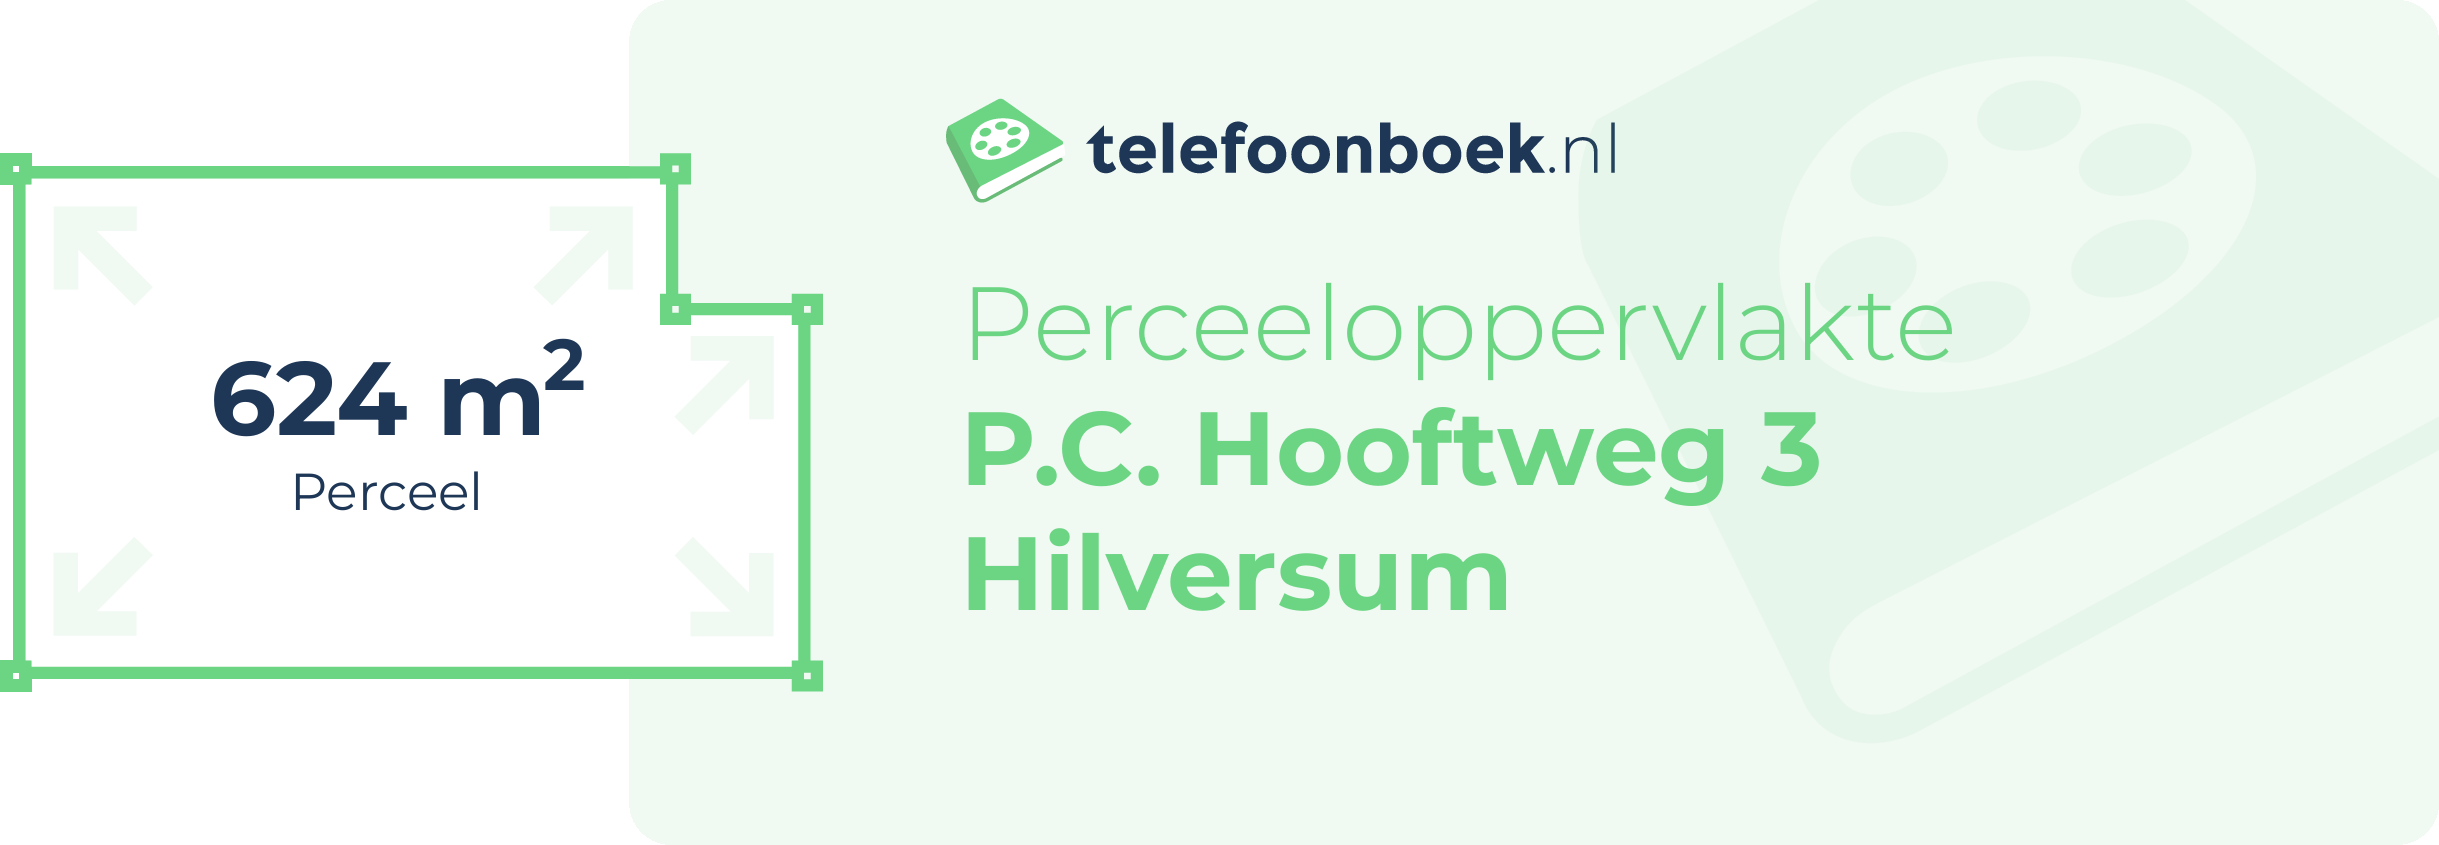 Perceeloppervlakte P.C. Hooftweg 3 Hilversum